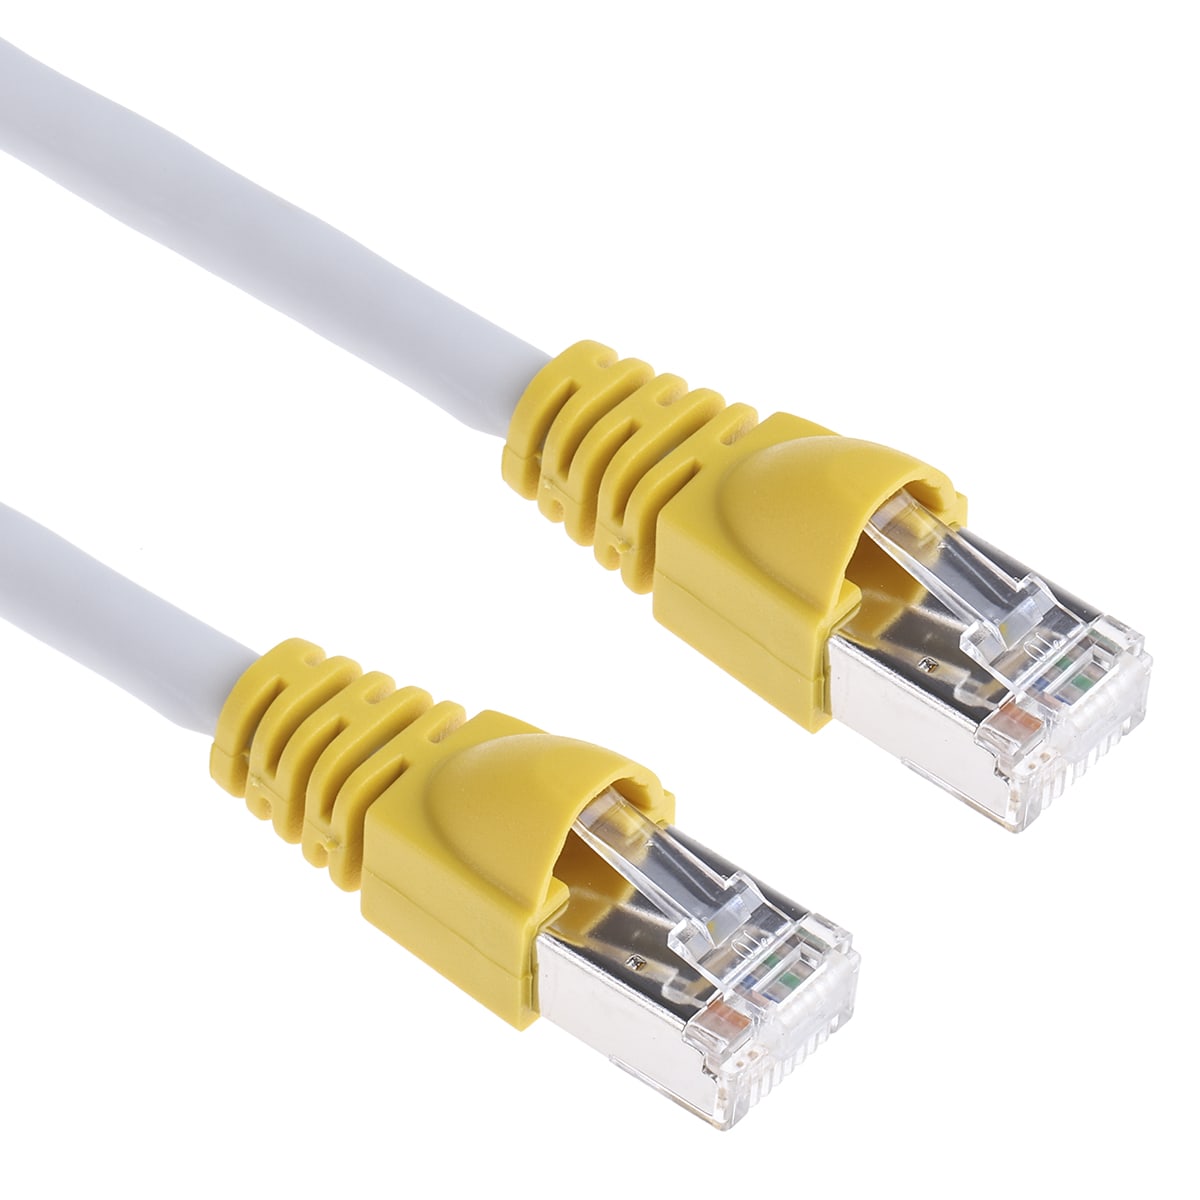   Basics RJ45 Cat 7 High-Speed Gigabit Ethernet